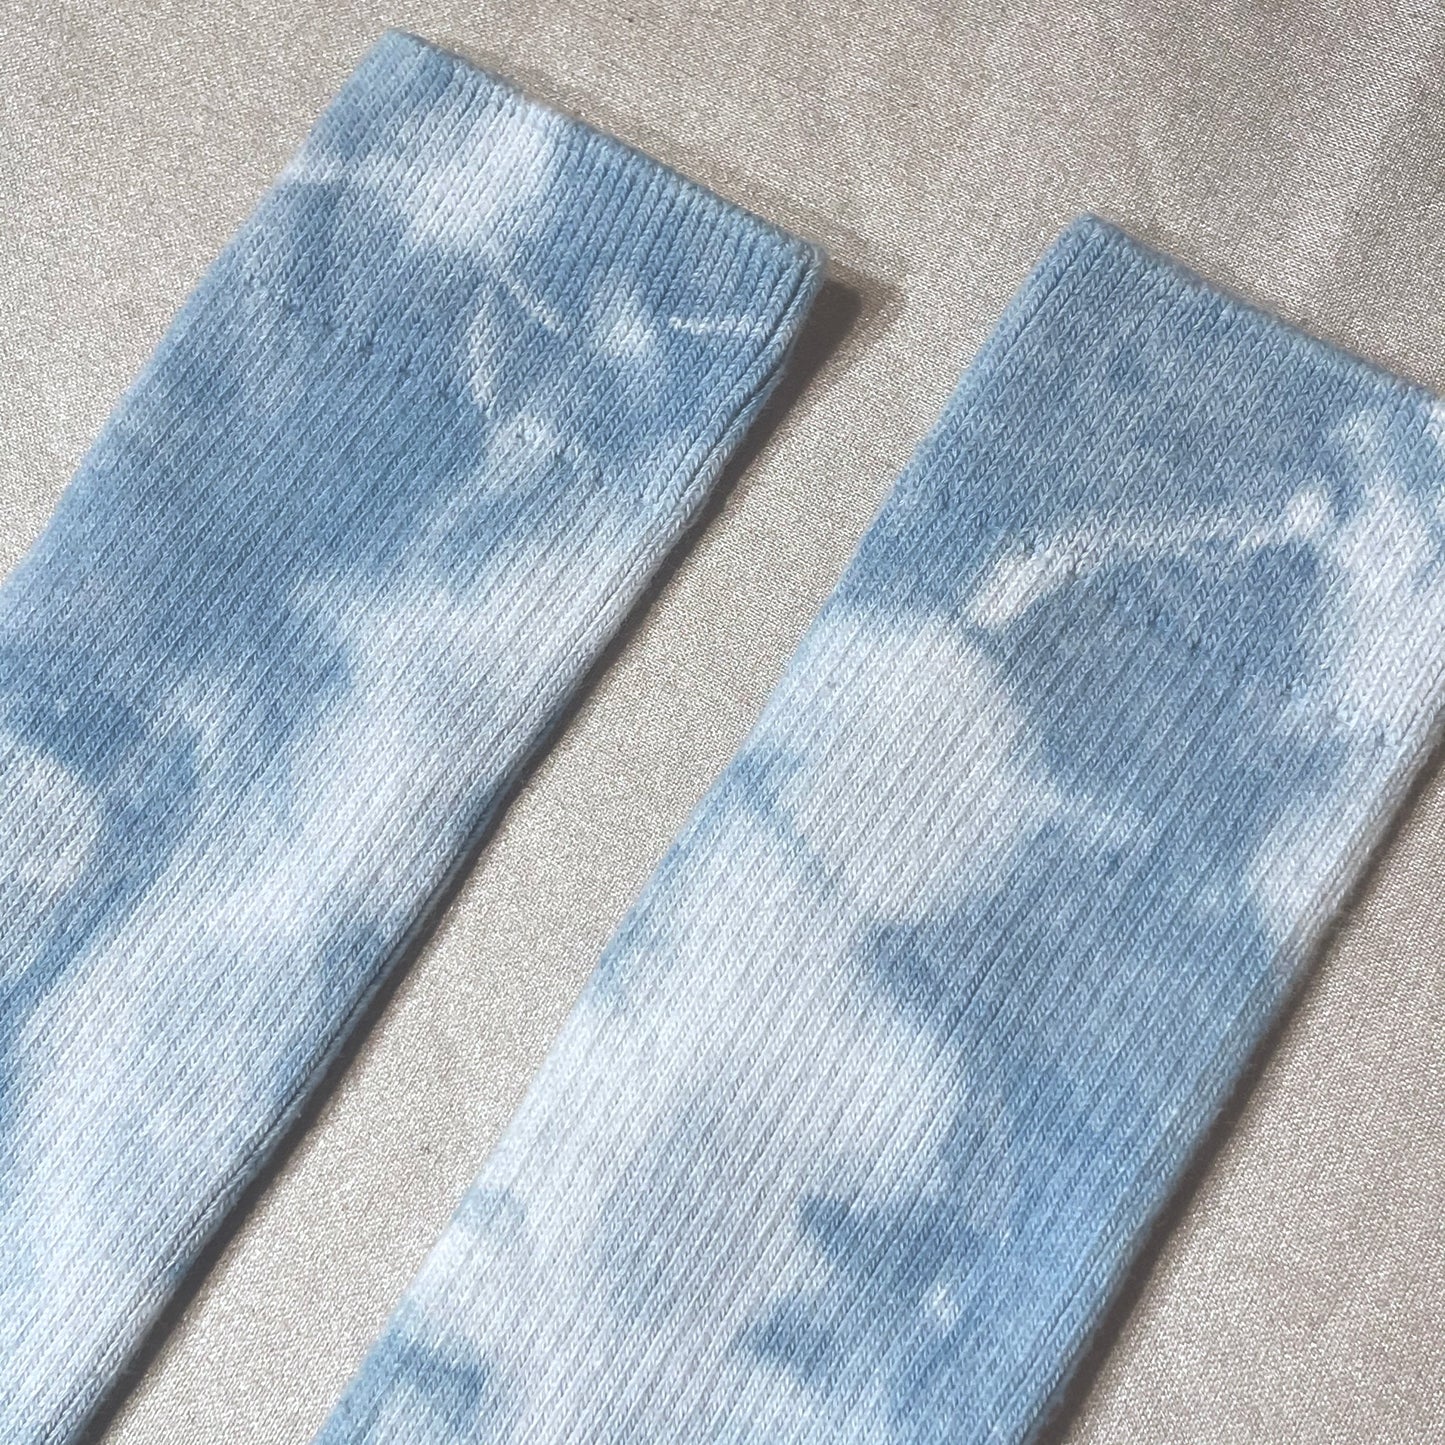 Indigo Dyed Socks 04